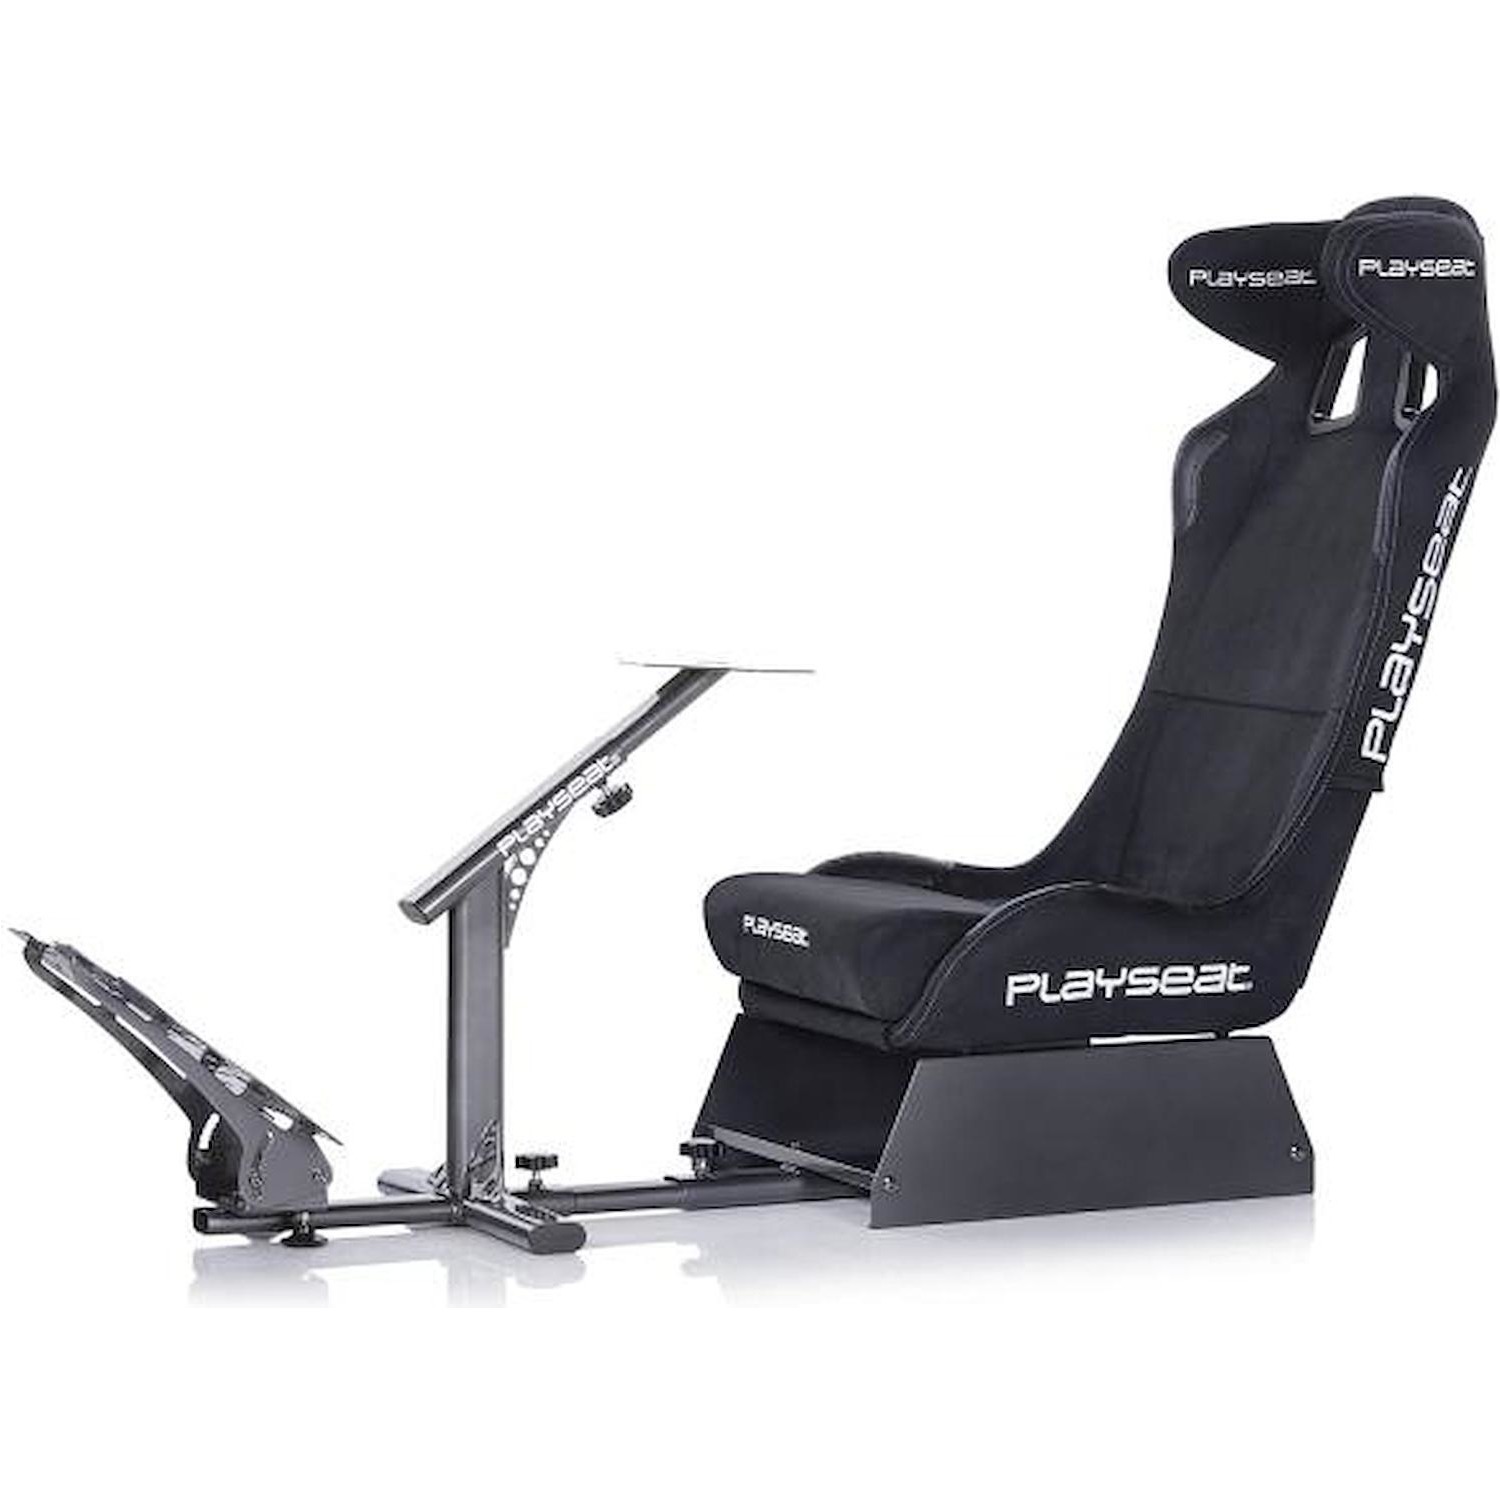 Immagine per Playseat Sedile Racing Evolution PRO Black Actifit con supporto per volante da DIMOStore